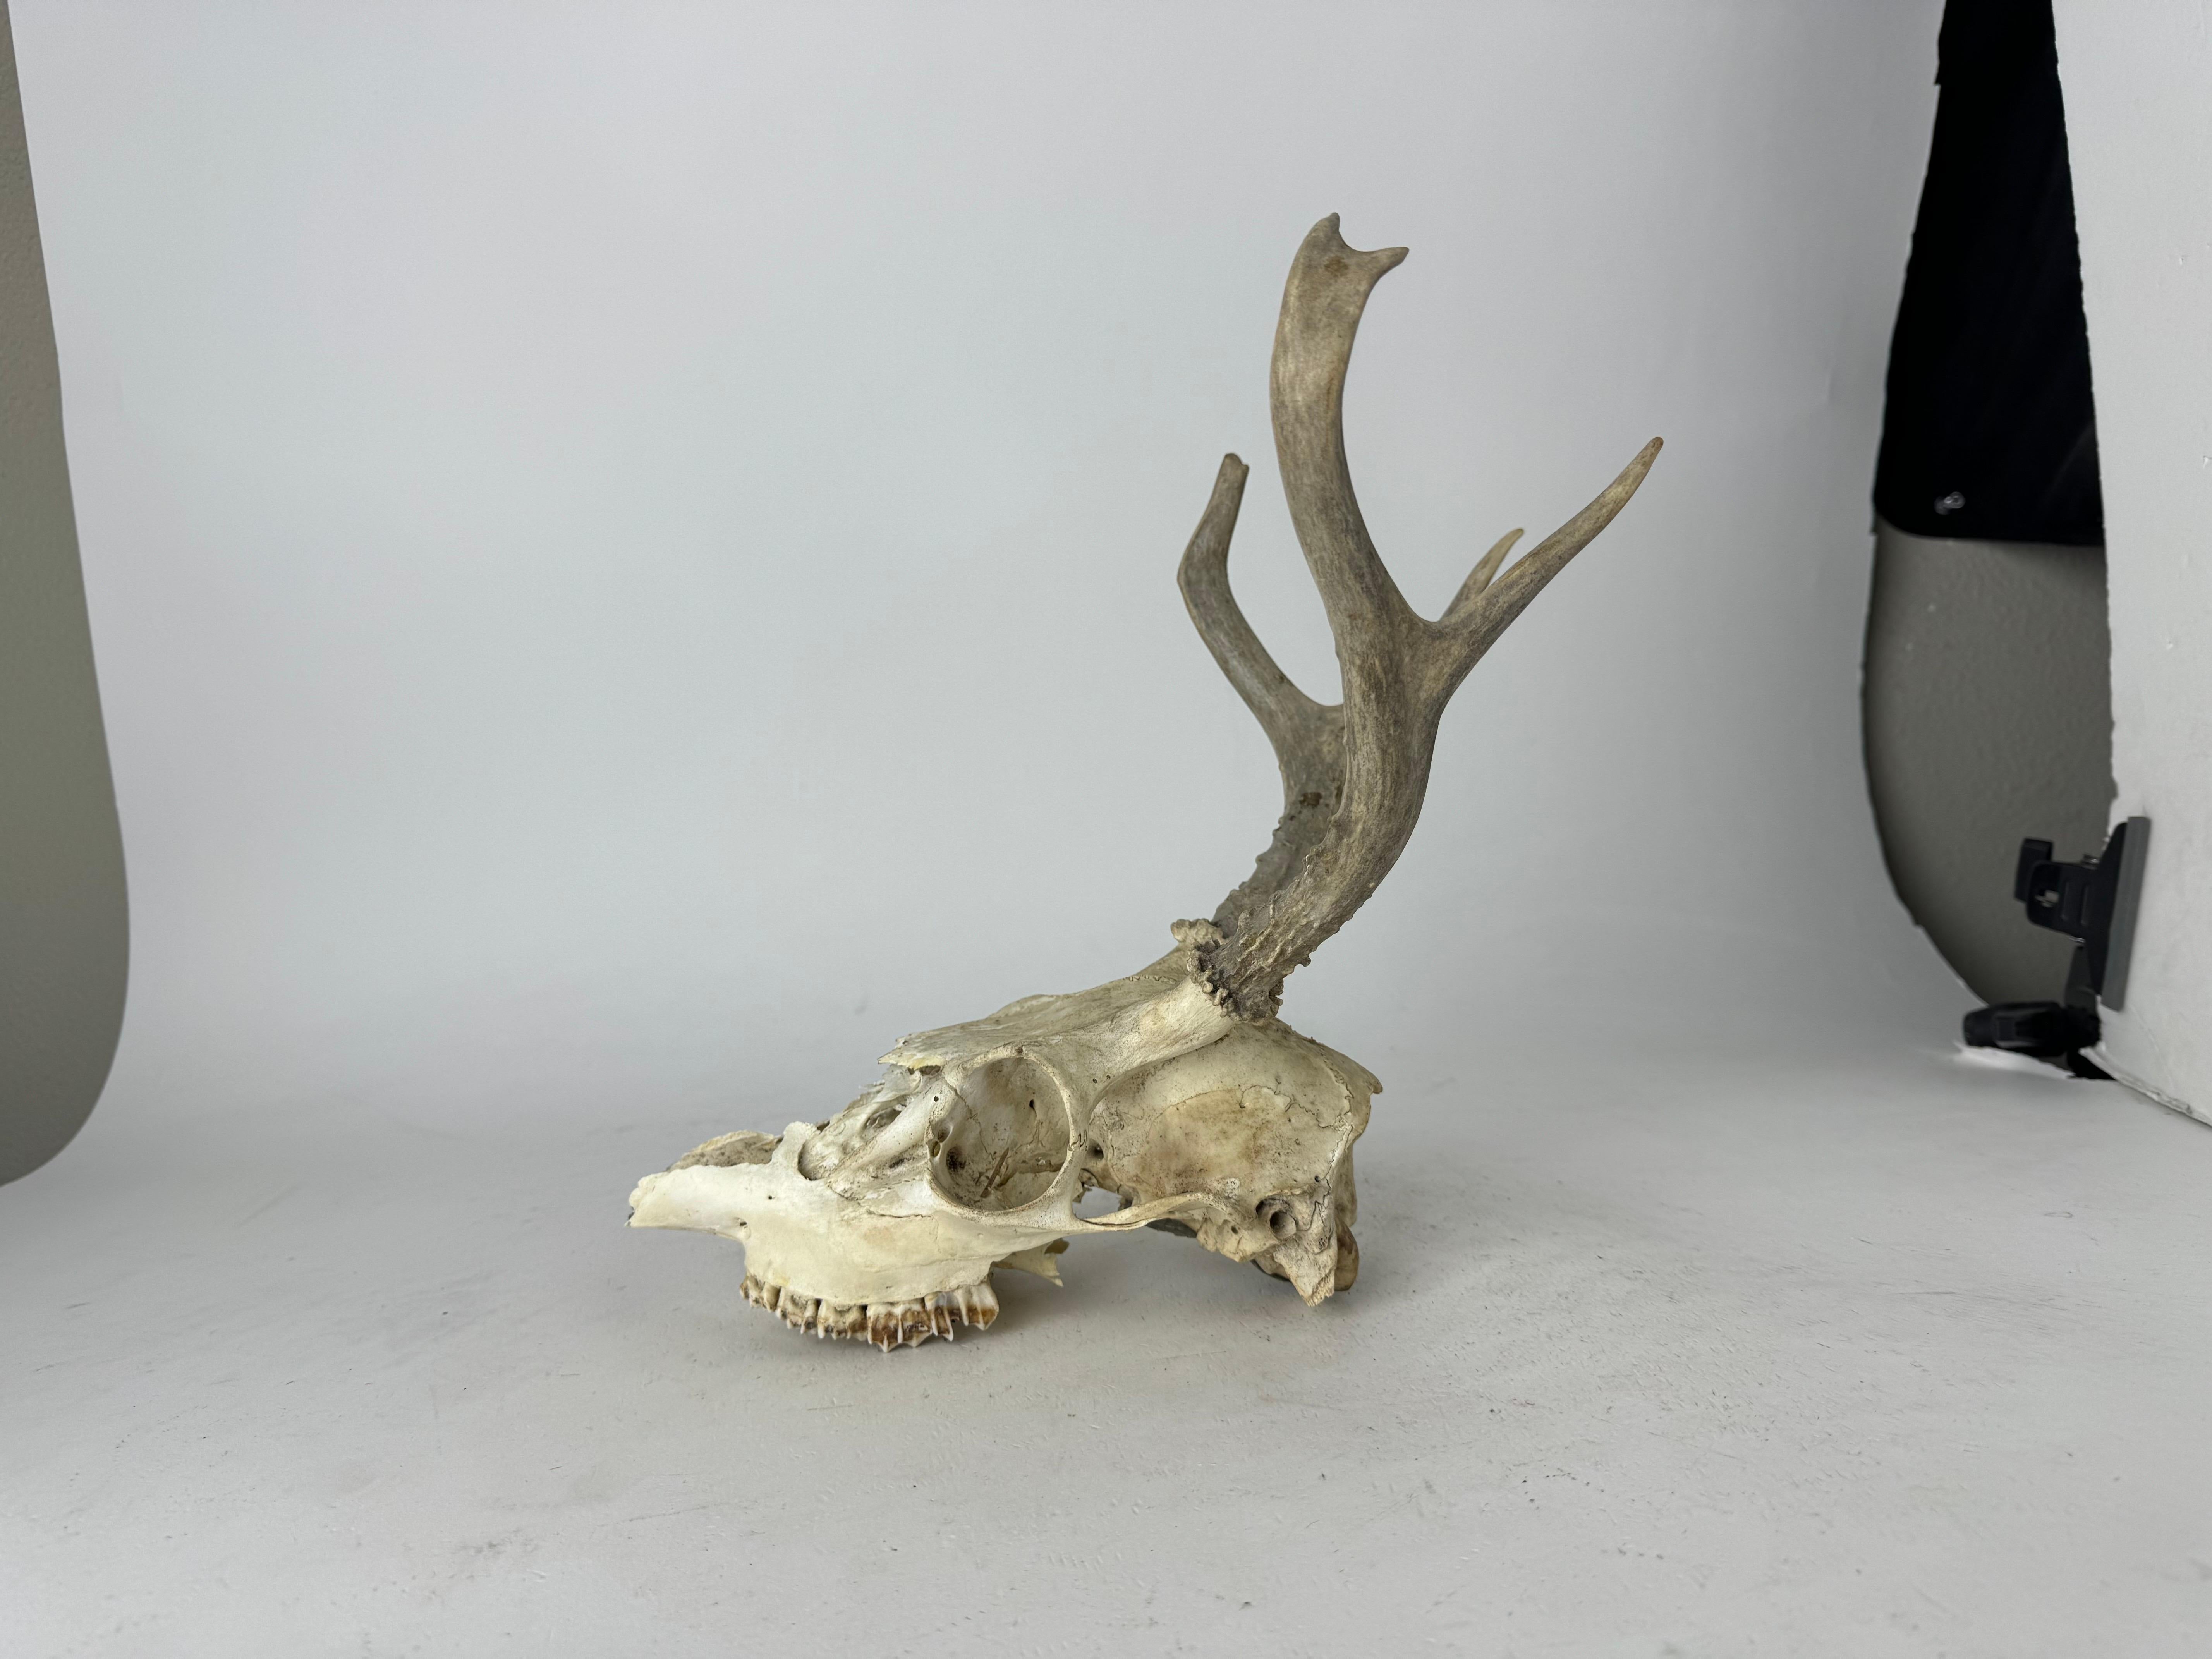 deer skull front view